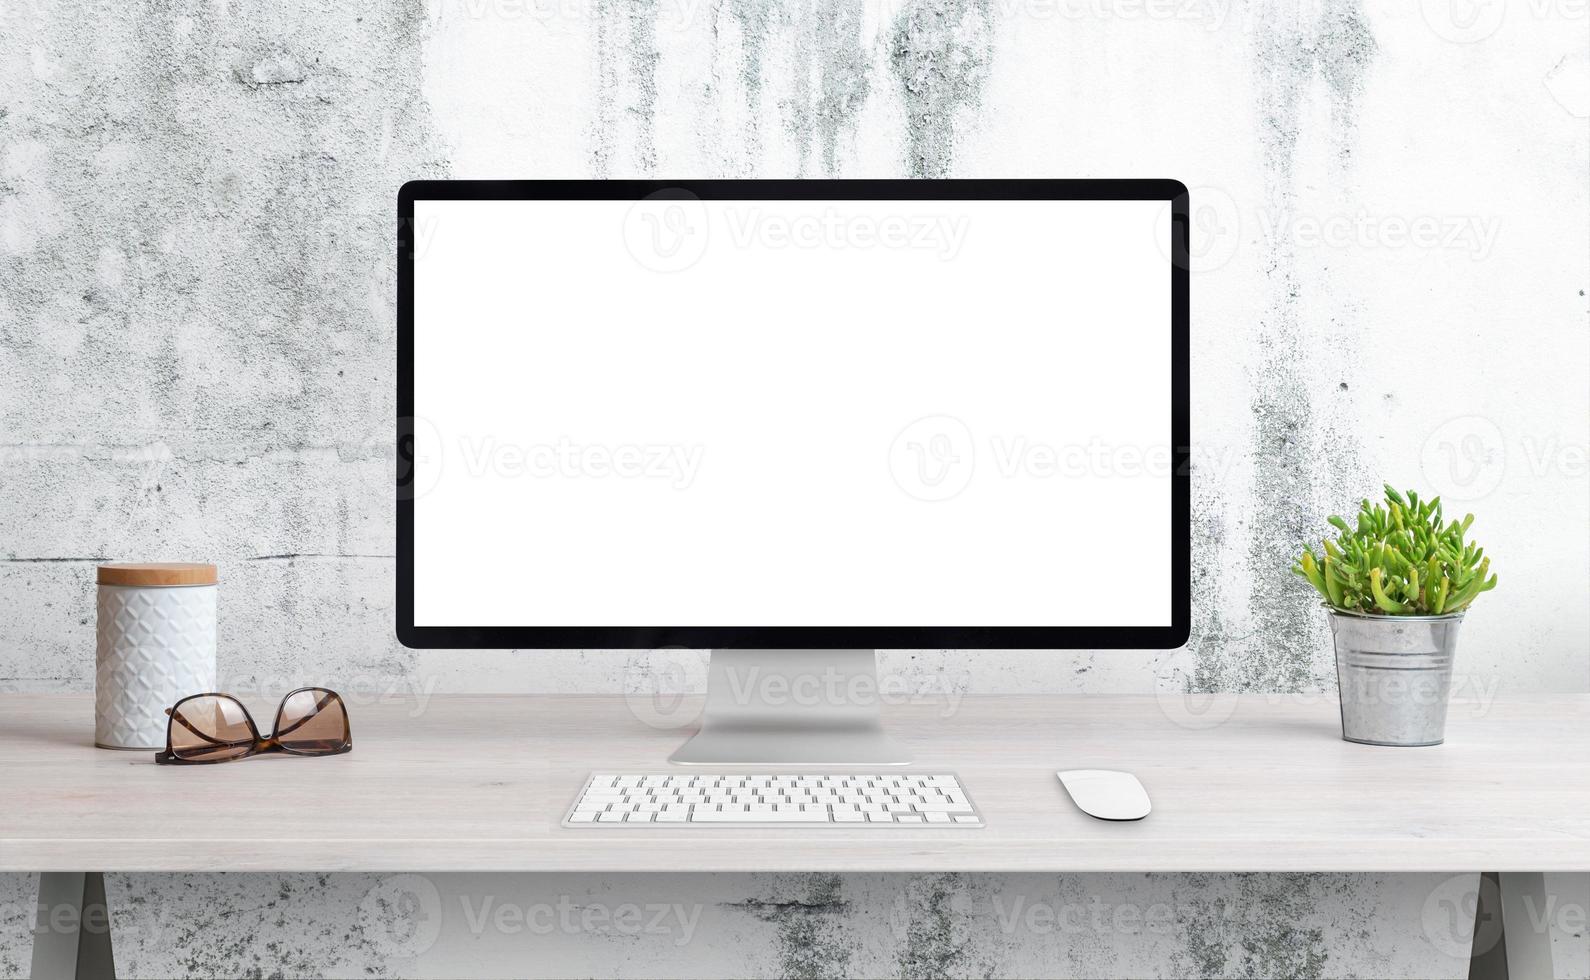 pantalla de computadora en el escritorio de la oficina con pantalla aislada para maqueta, presentación de página wep. escritorio limpio con planta, vasos y caja. pared rugosa blanca en el fondo foto